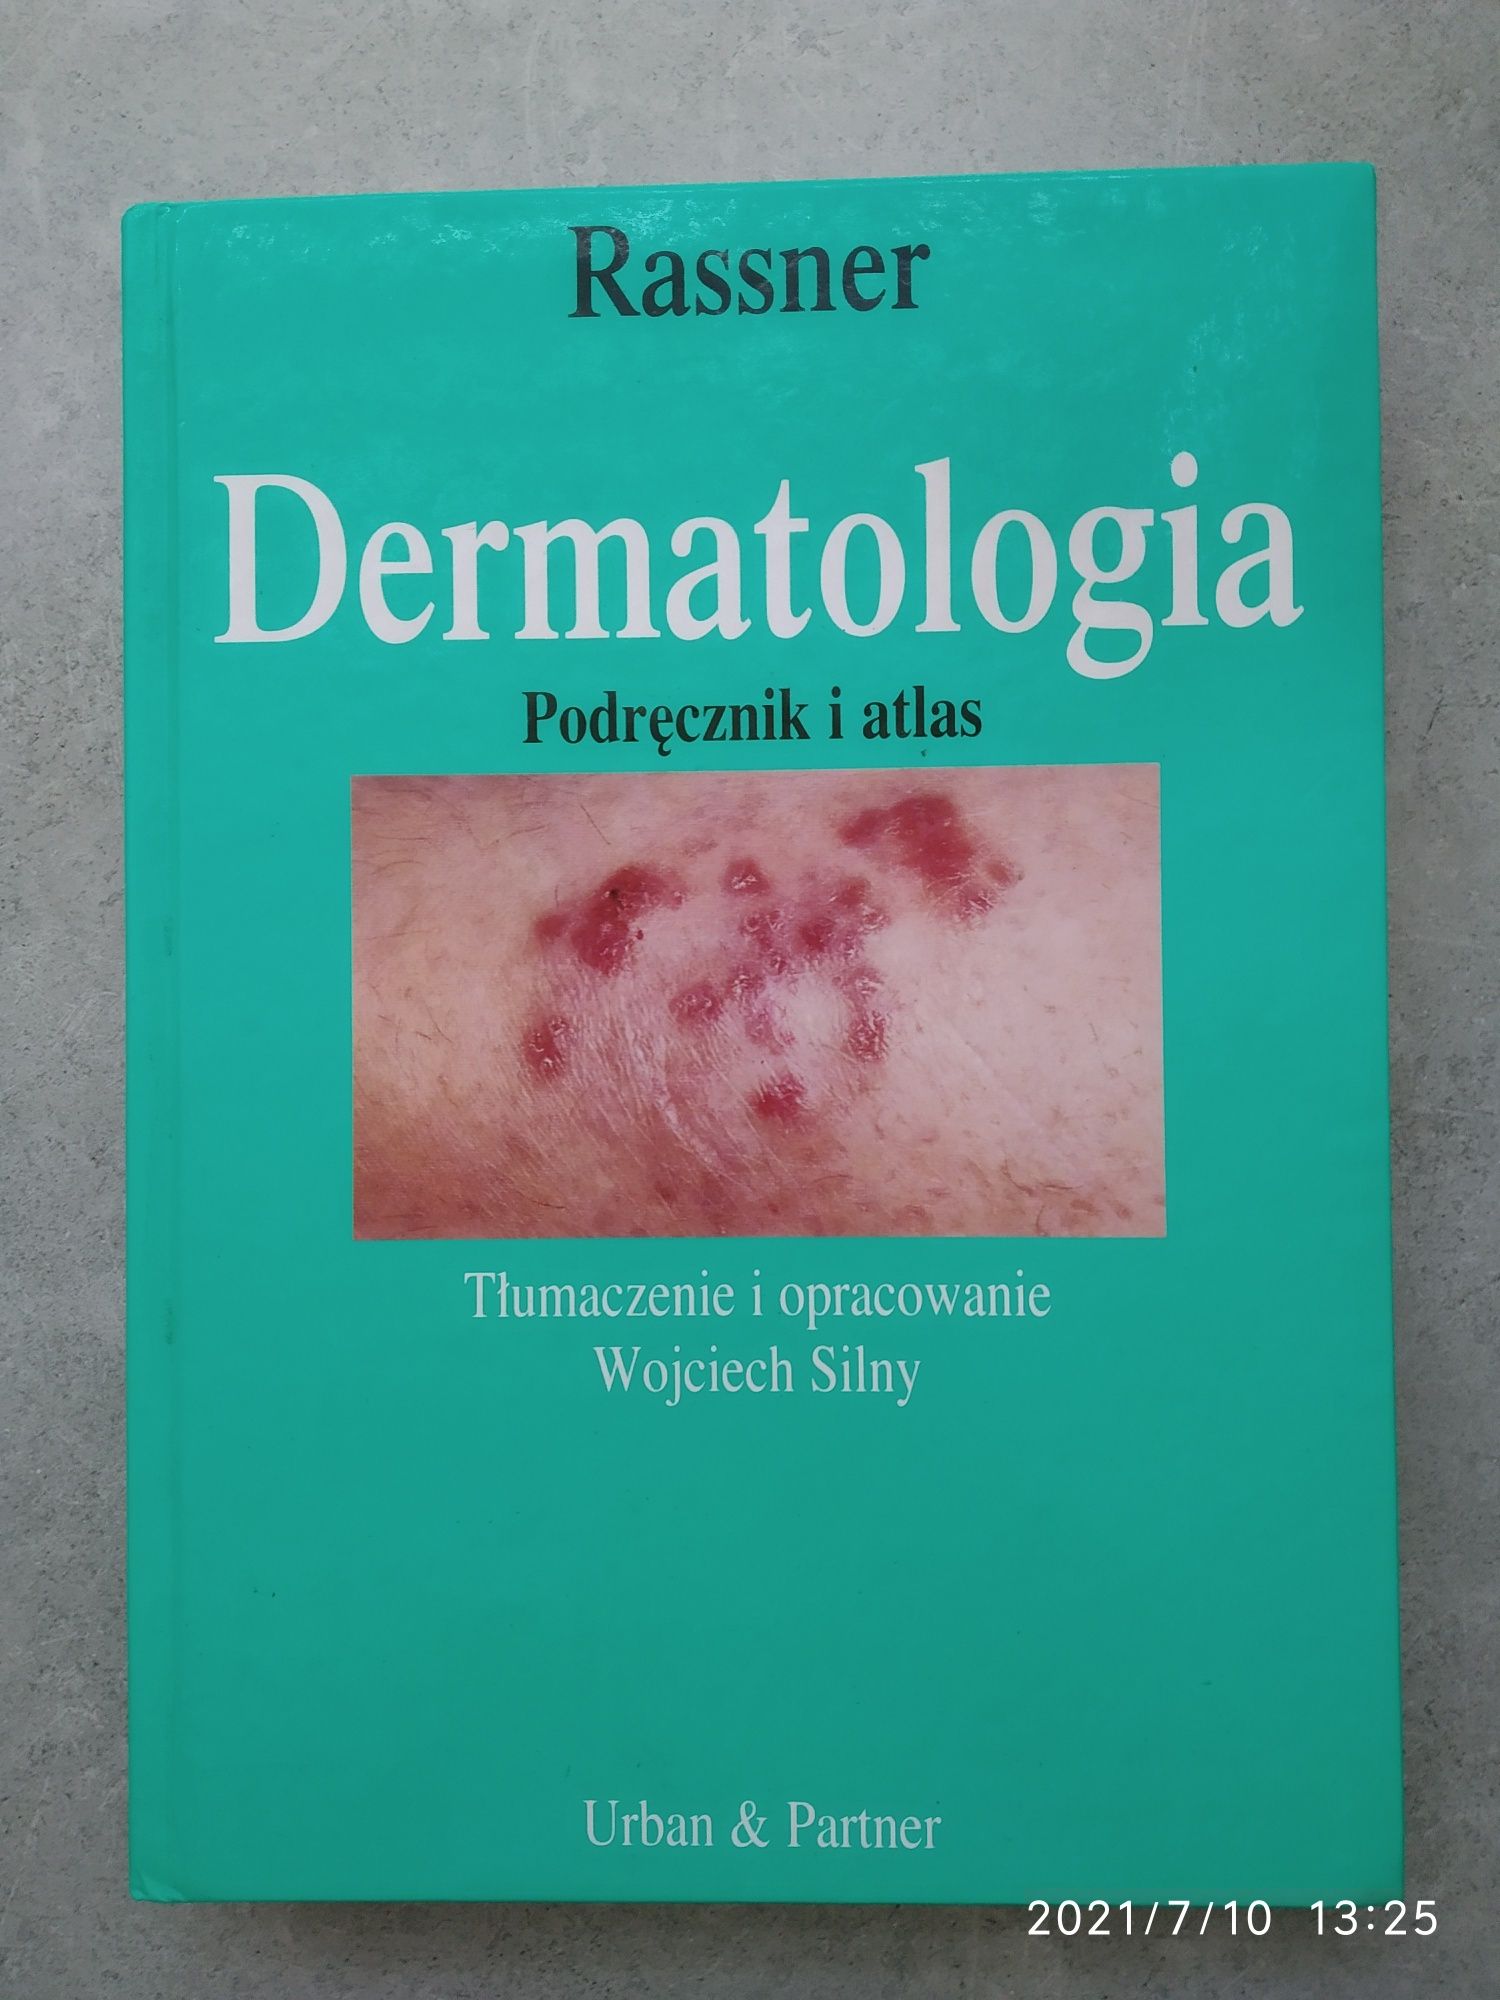 Медицинские книги по дерматовенерологии на польском языке